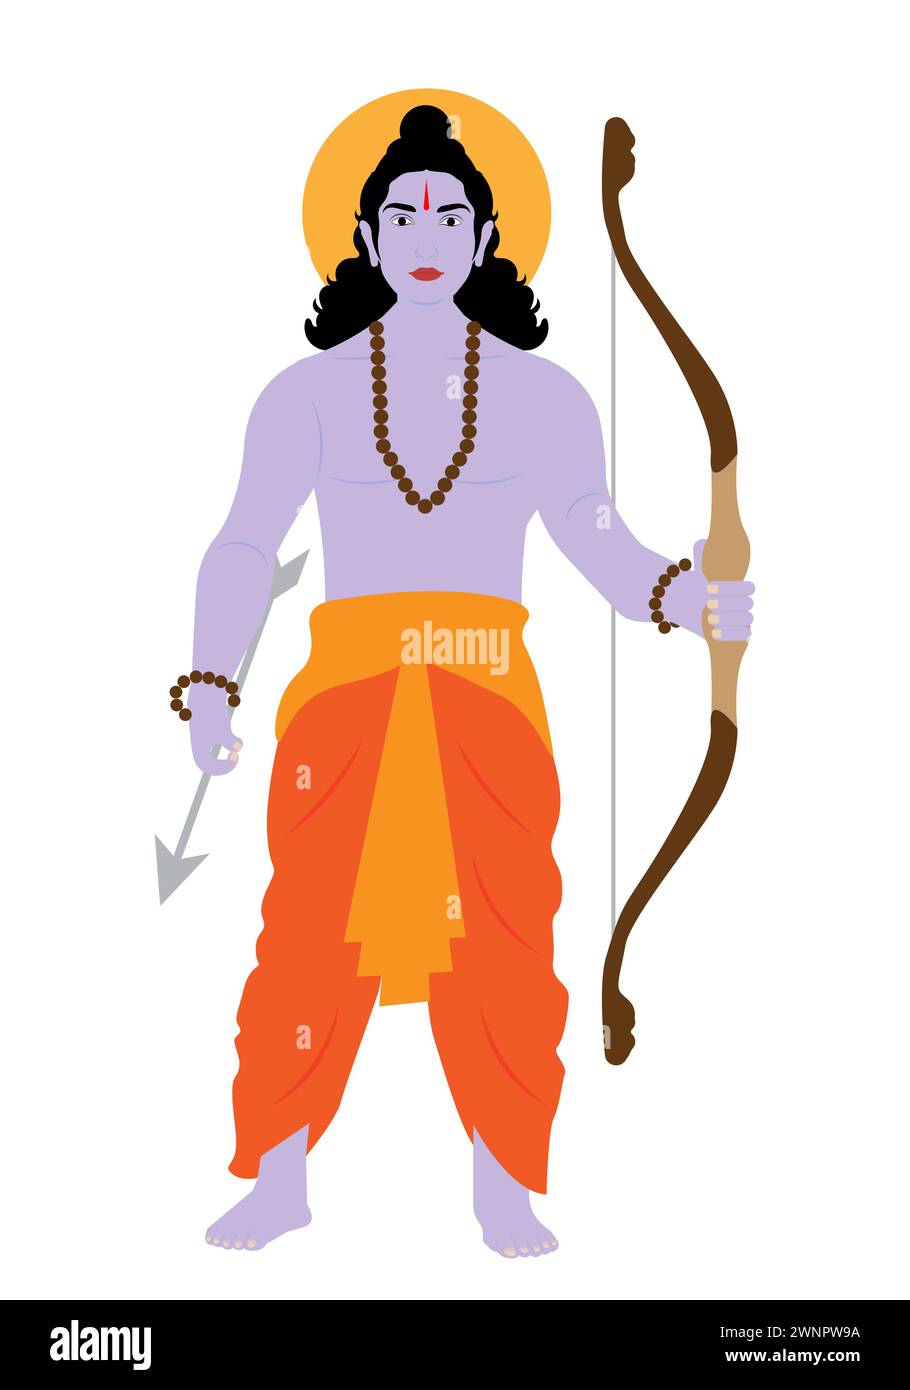 Illustrazione di Lord RAM con vestito di zafferano che tiene Sharanga (arco). Illustrazione Vettoriale